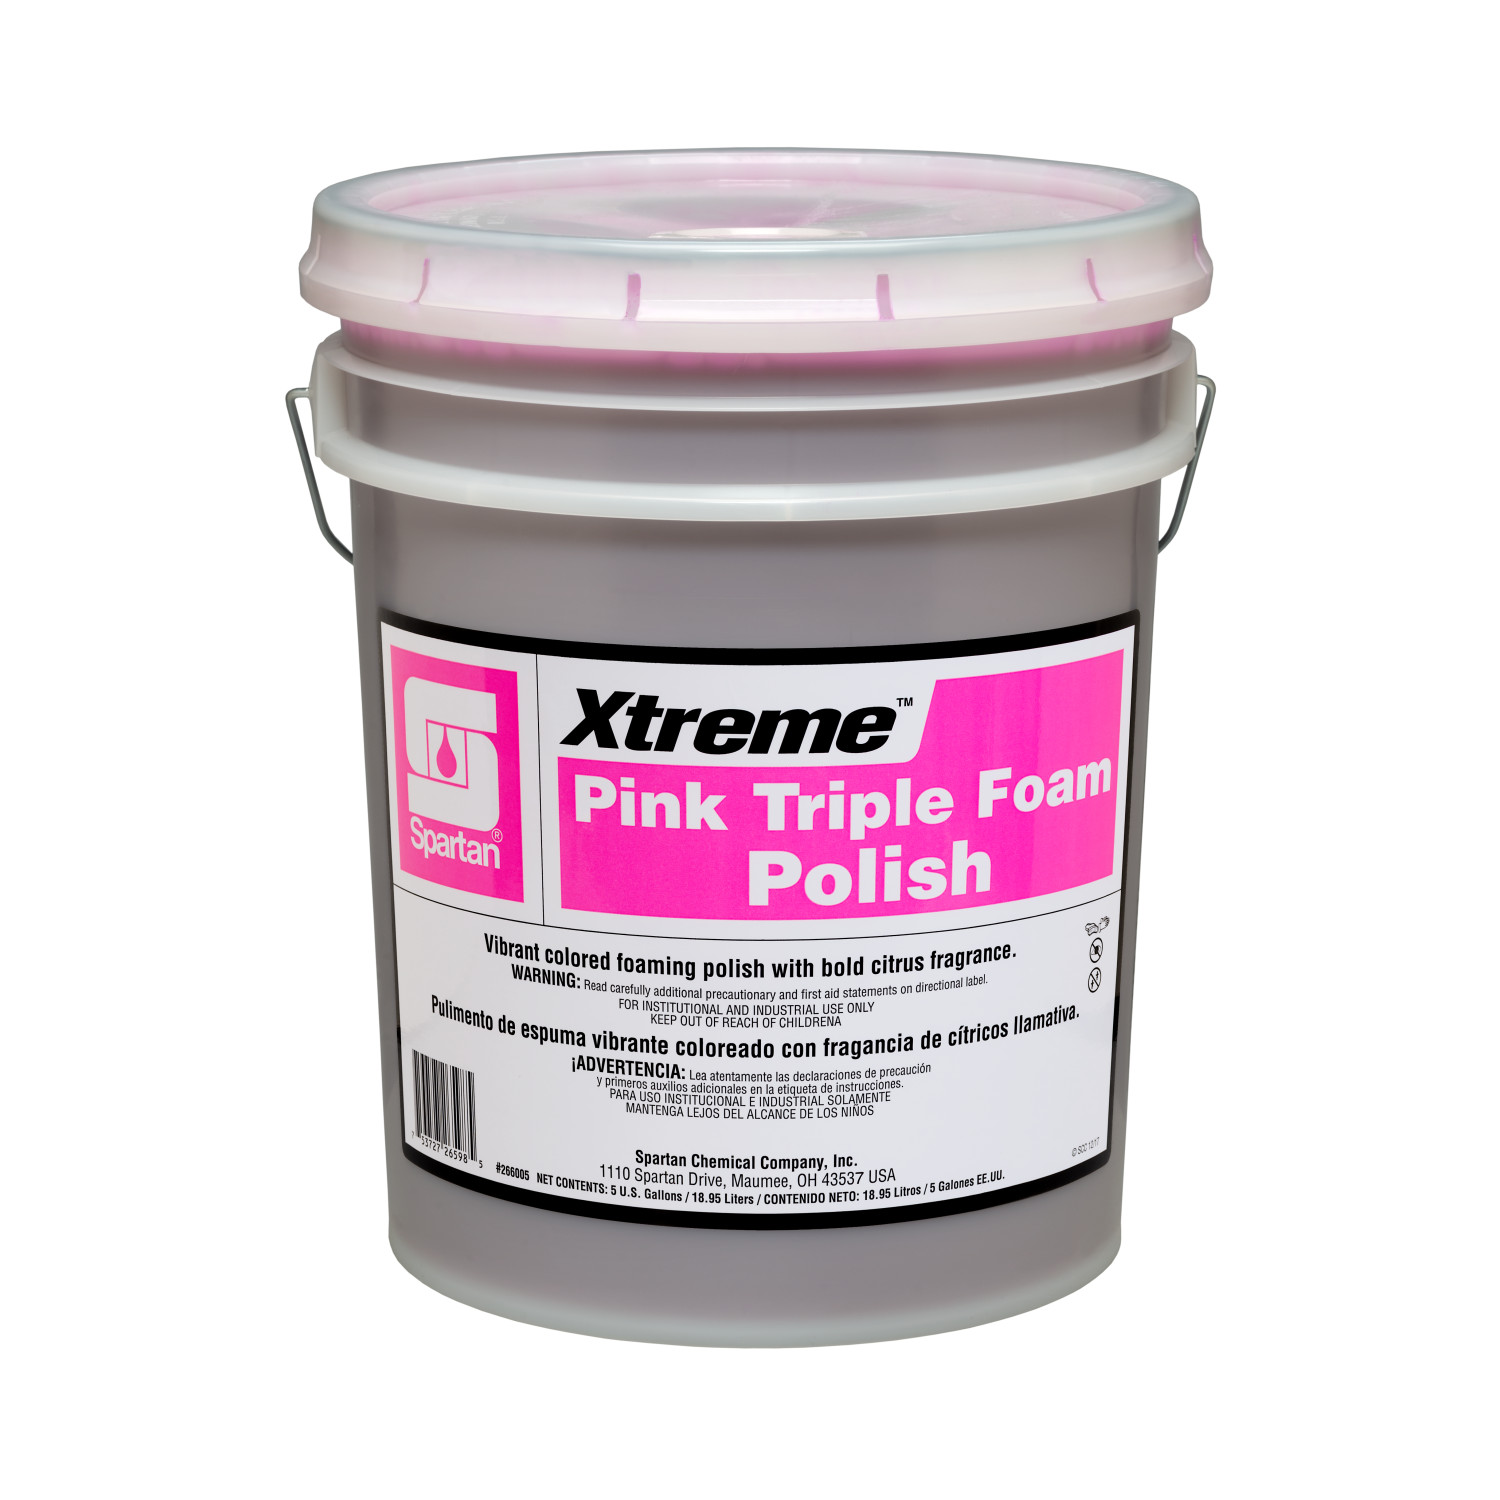 Xtreme® Pink Triple Foam Polish 5 gallon pail